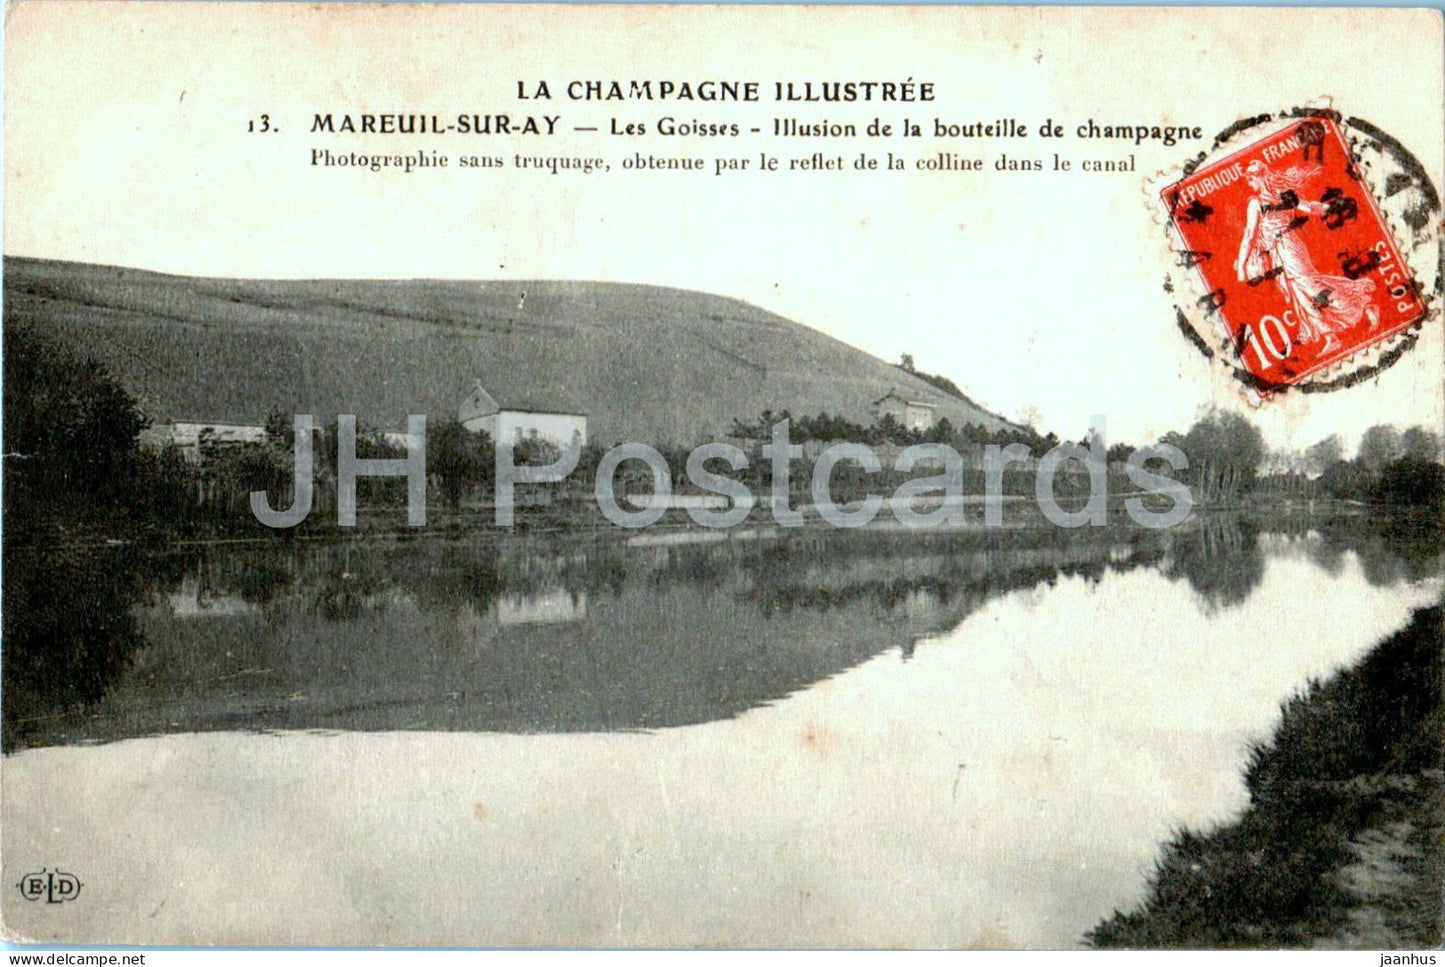 Mareuil sur Ay - Les Goisses - Illusion de la bouteille de champagne - 13 - old postcard - France - used - JH Postcards